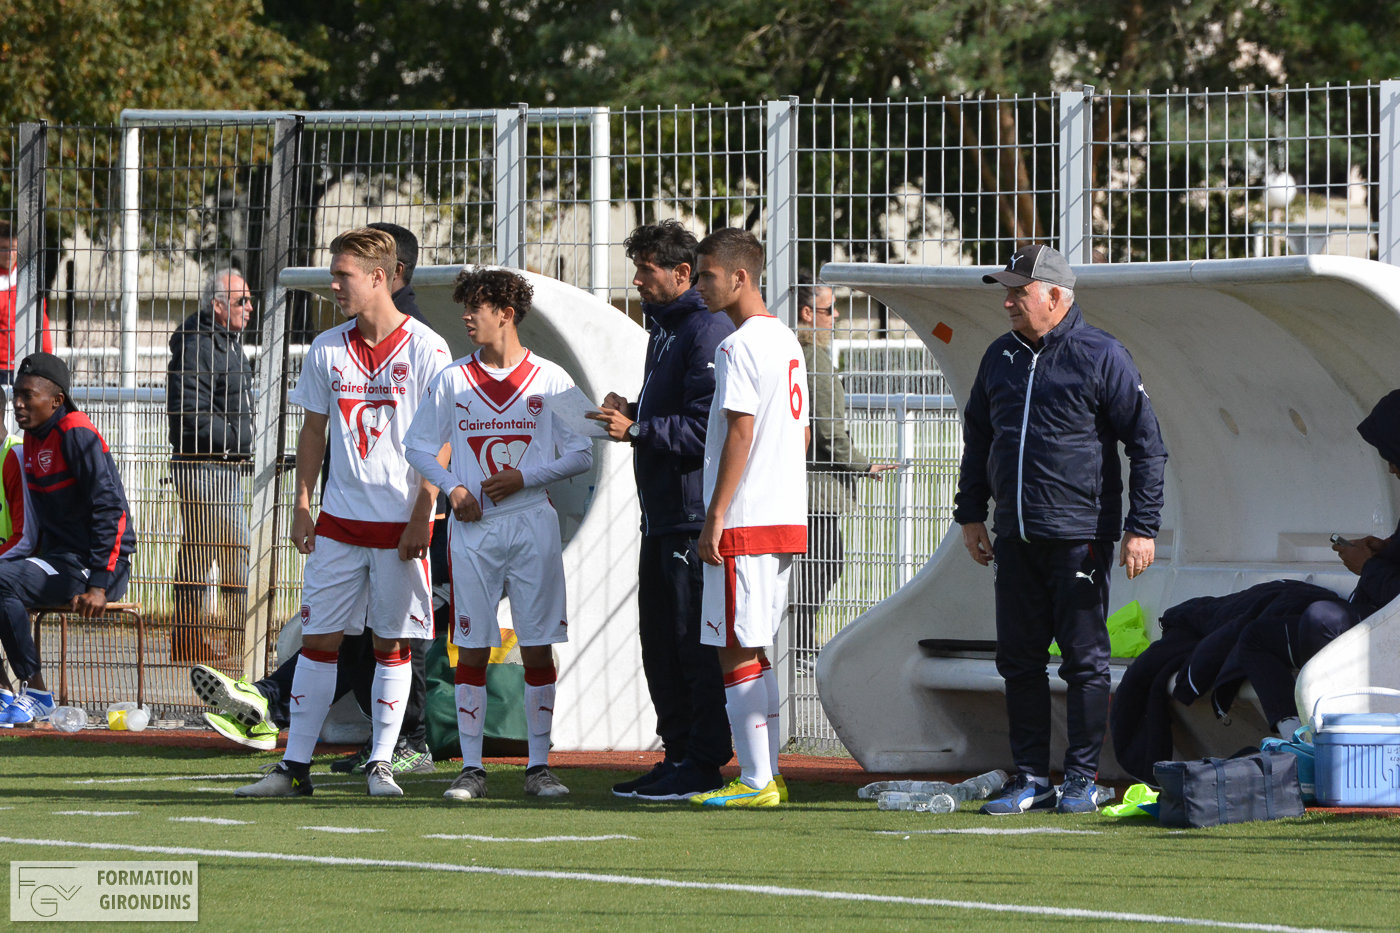 Cfa Girondins : Le groupe avec deux joueurs à l'essai pour le tournoi de Montaigu - Formation Girondins 